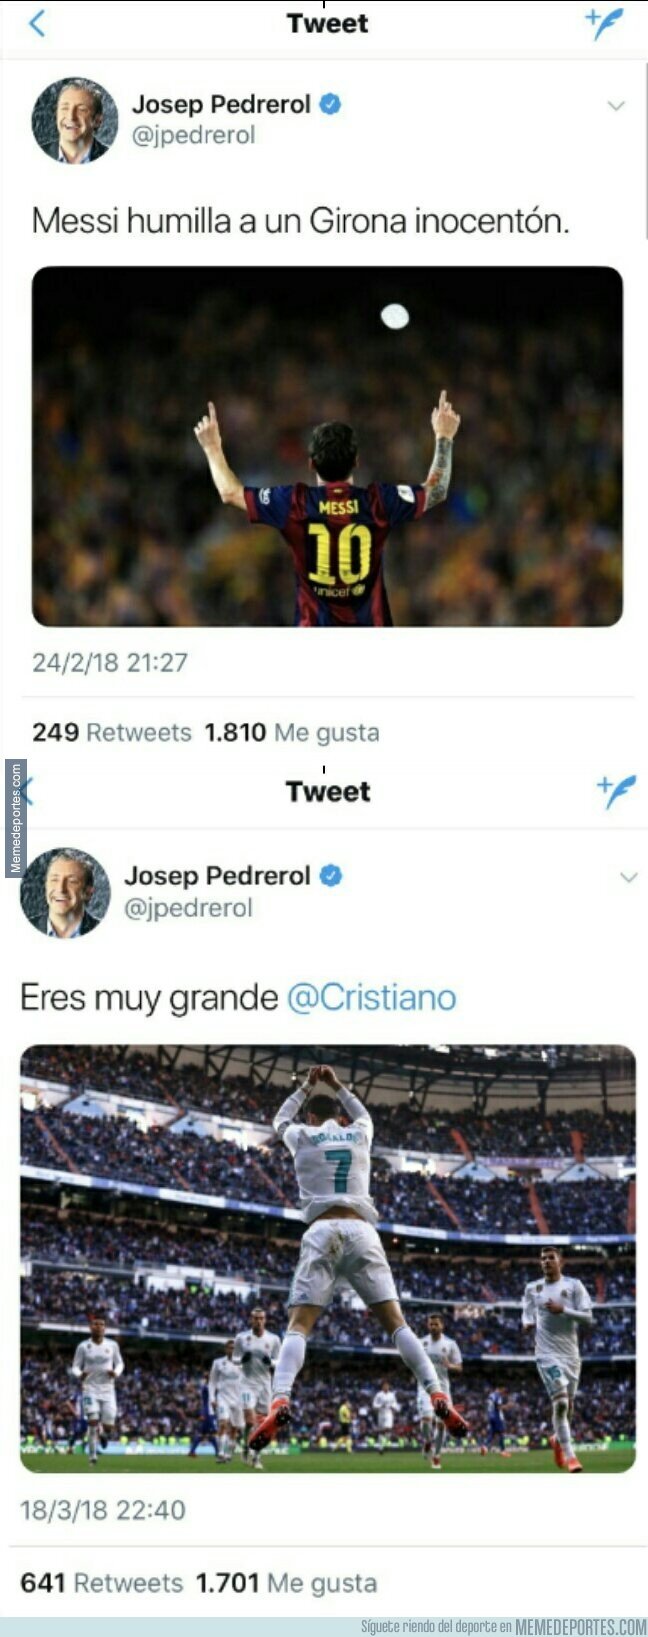 1026261 - Pedrerol se auto-retrata él solo con el doble rasero opinando de Messi y Cristiano ante el Girona